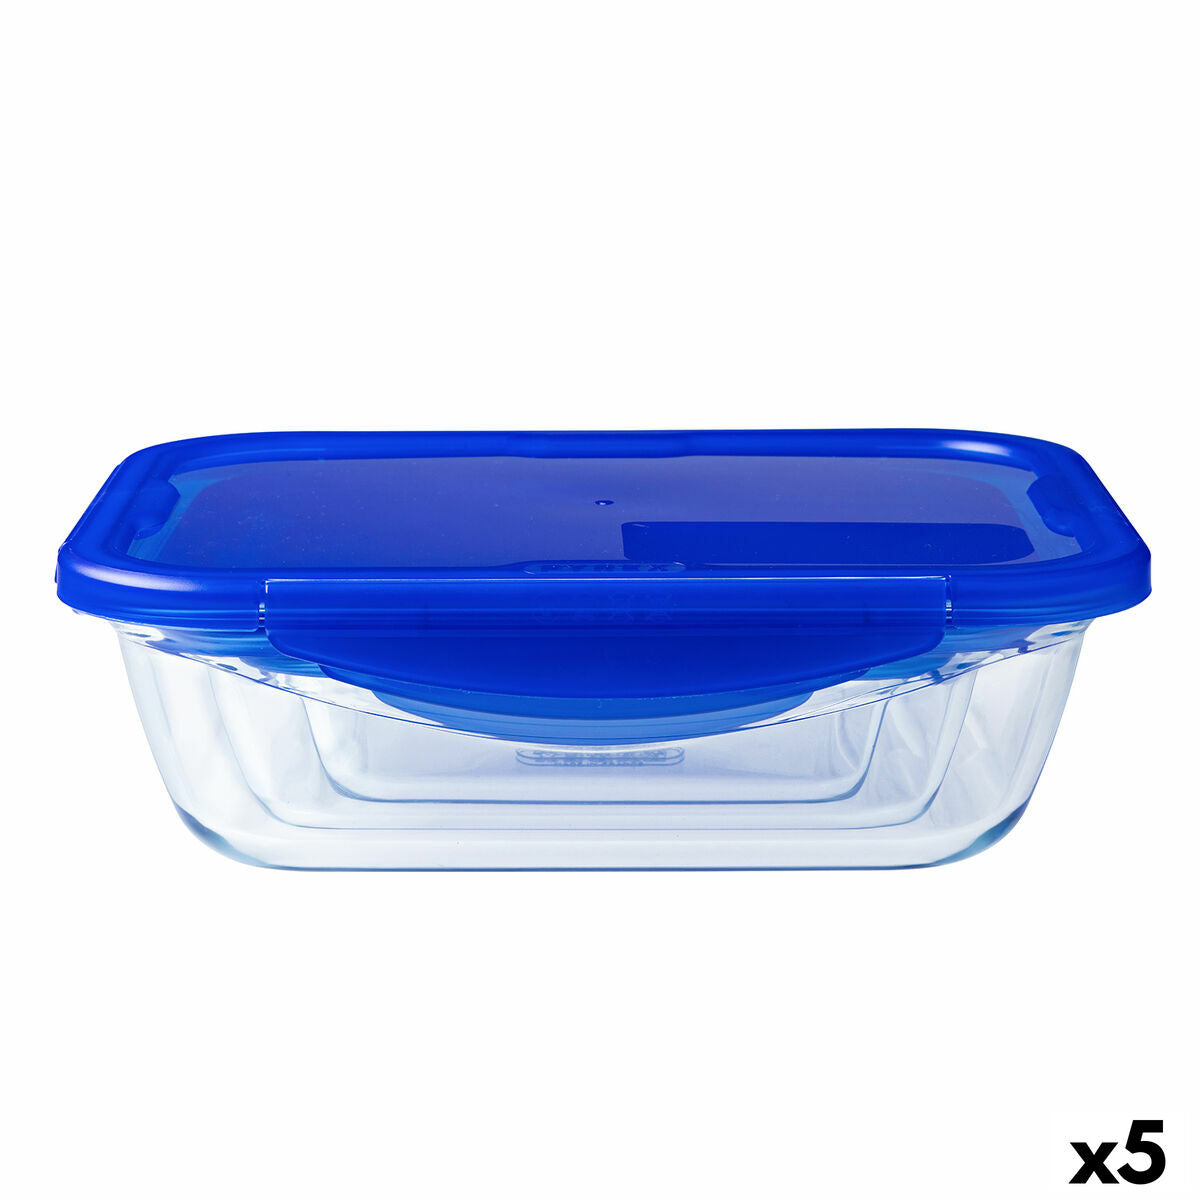 Hermetische Lunchtrommel Pyrex Cook & Go Blauw 1,7 L 24 x 18 cm Glas (5 Stuks)